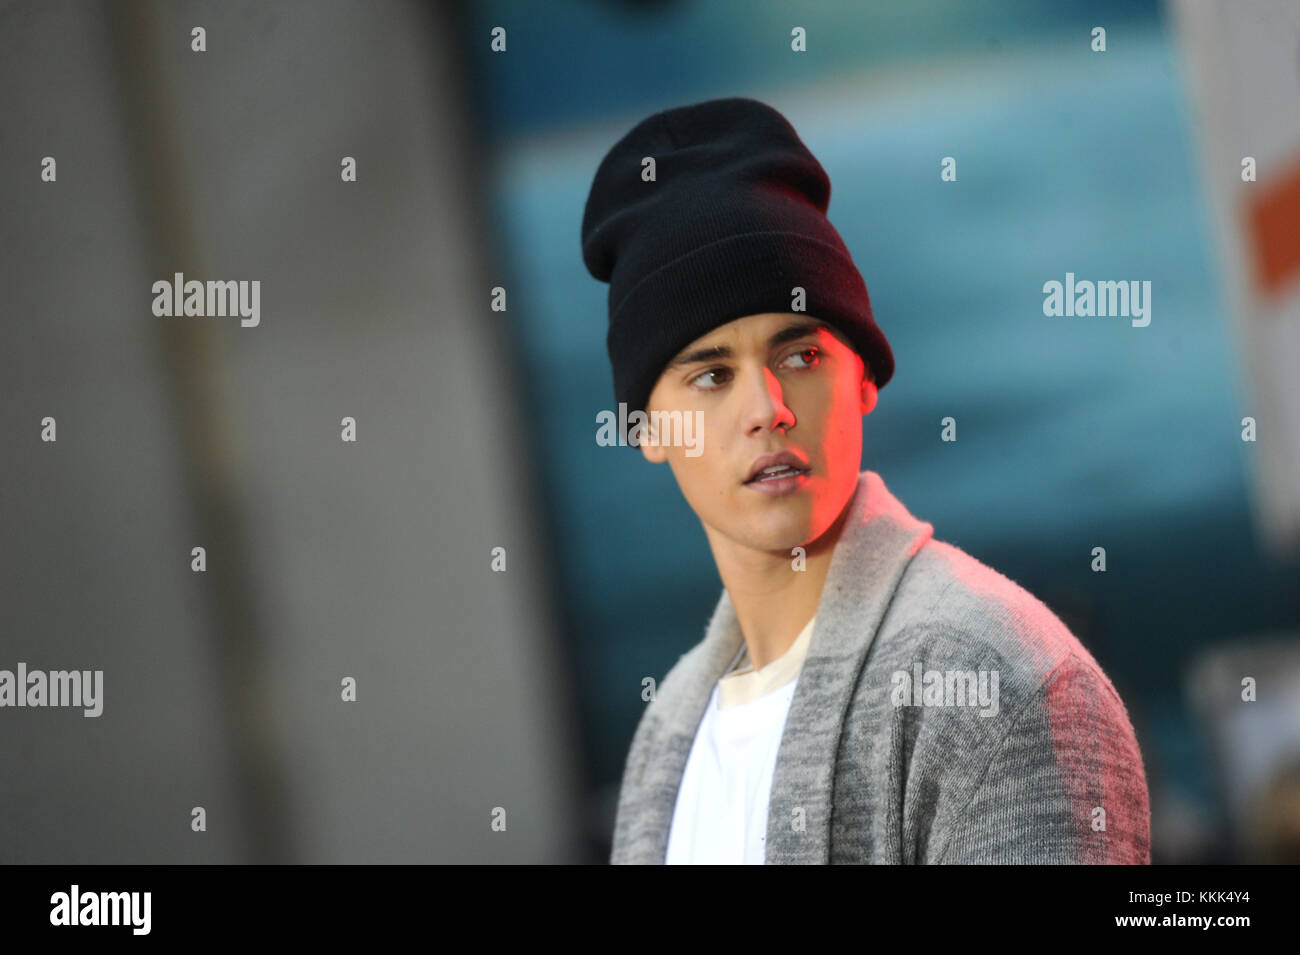 New York, NY - 18 de noviembre: el cantante Justin Bieber realiza en NBC de 'hoy' citi concert series en la NBC Today Show el 18 de noviembre de 2015 en Nueva York, Nueva York. Personas: Justin Bieber Foto de stock